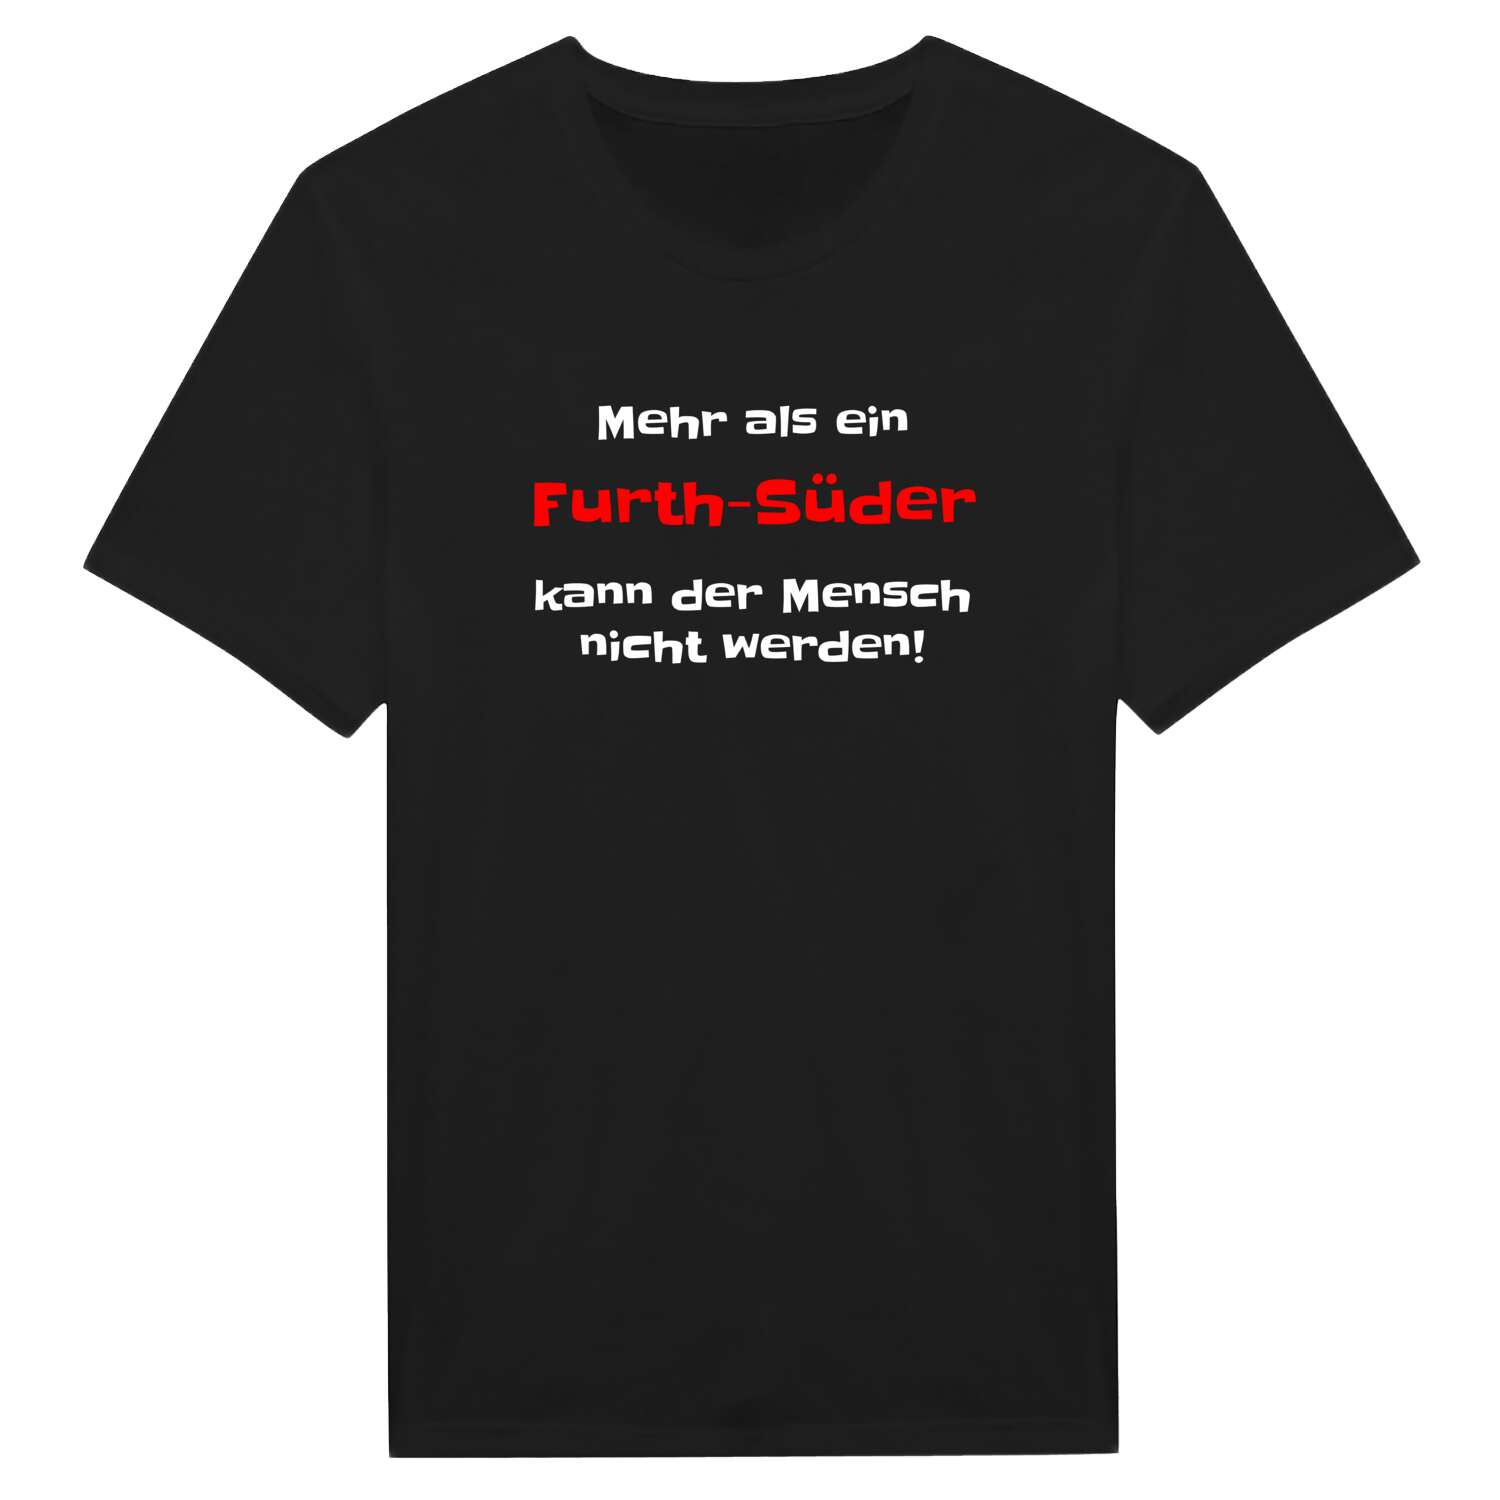 Furth-Süd T-Shirt »Mehr als ein«